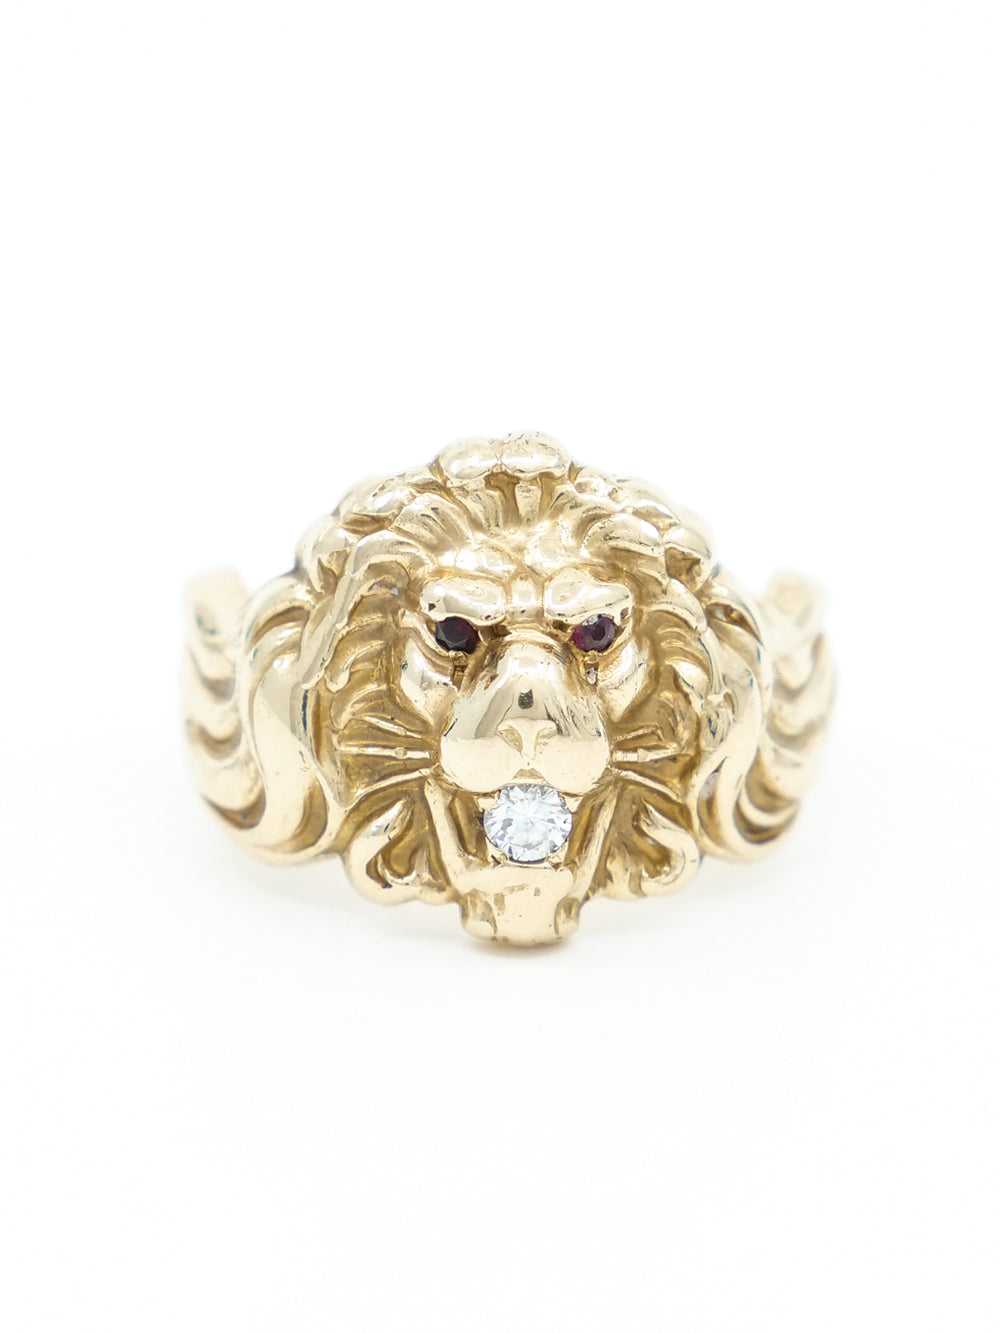 Antique 14k Lion Ring - image 3